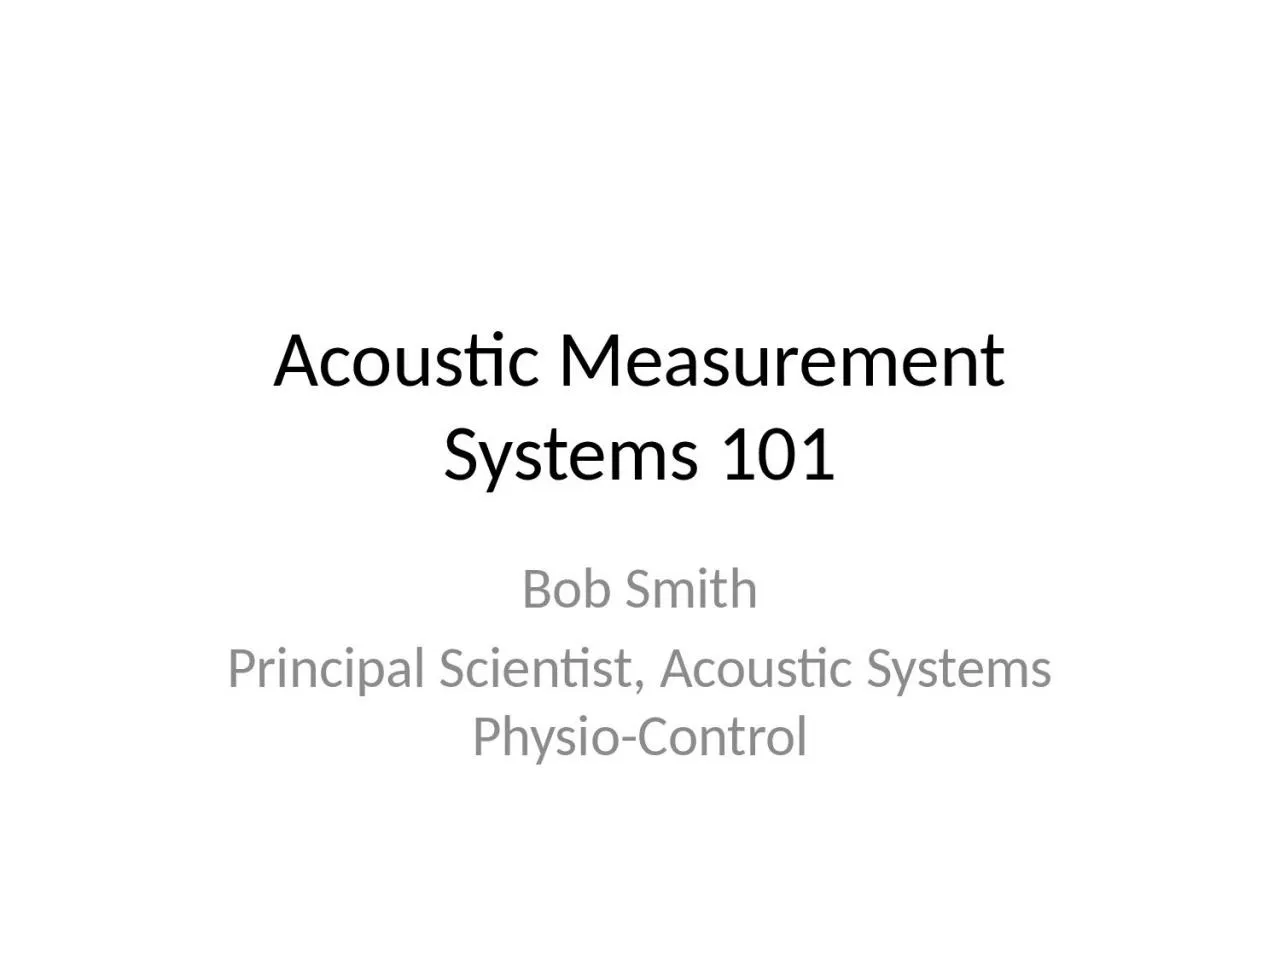 Acoustic Measurement Systems 101